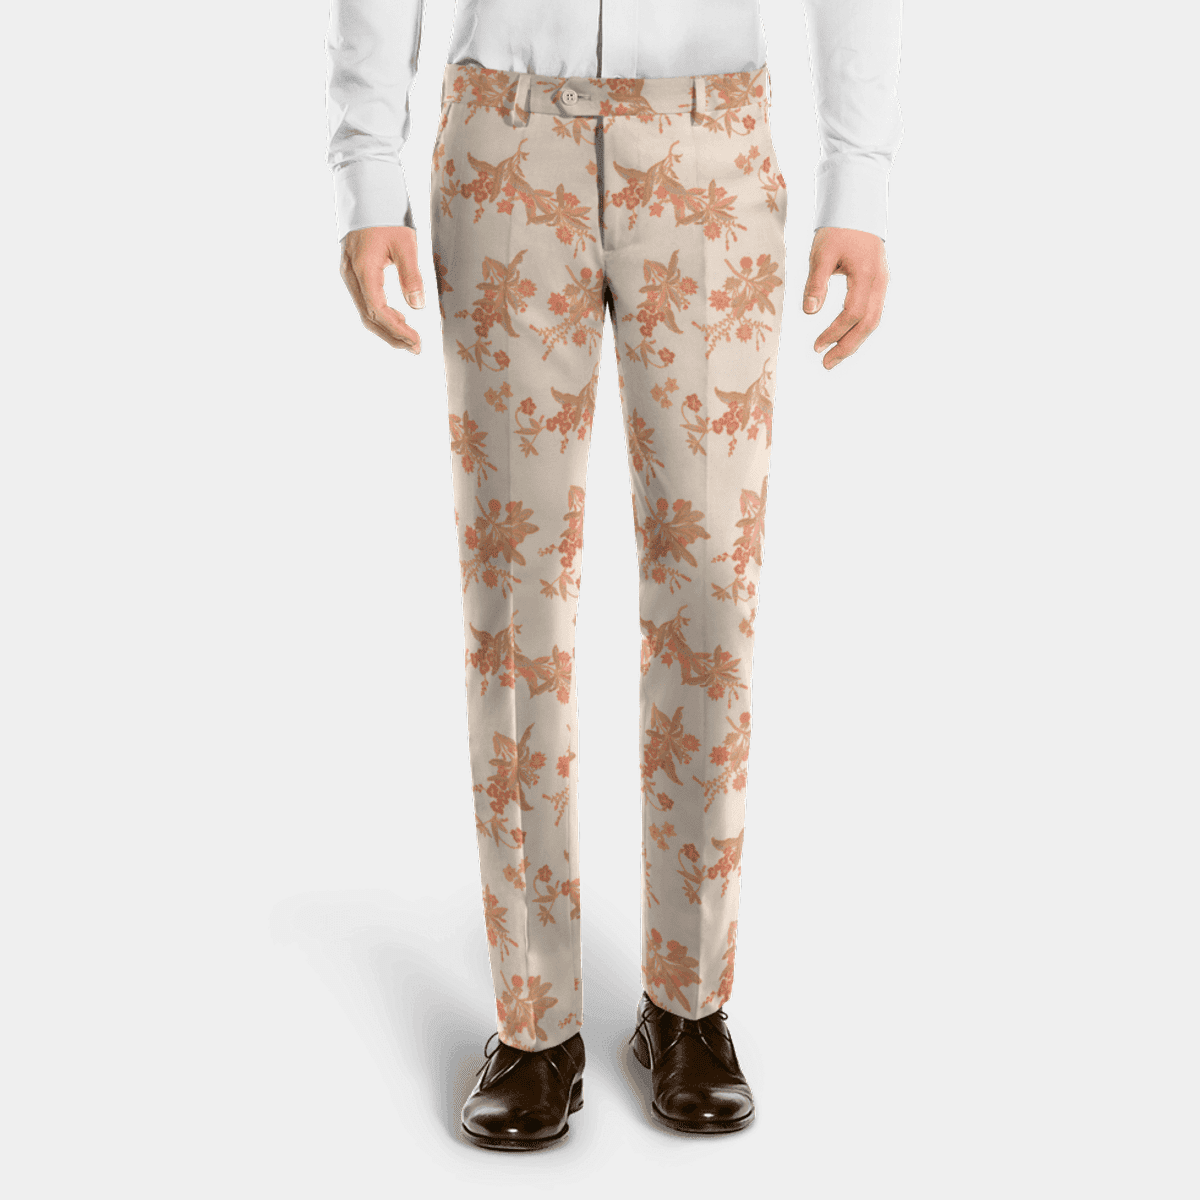 Buy Boyland Mens Floral Printed Ninth Pants Casual Drawstring Elastic Waist  Jogger Pants Online at desertcartINDIA